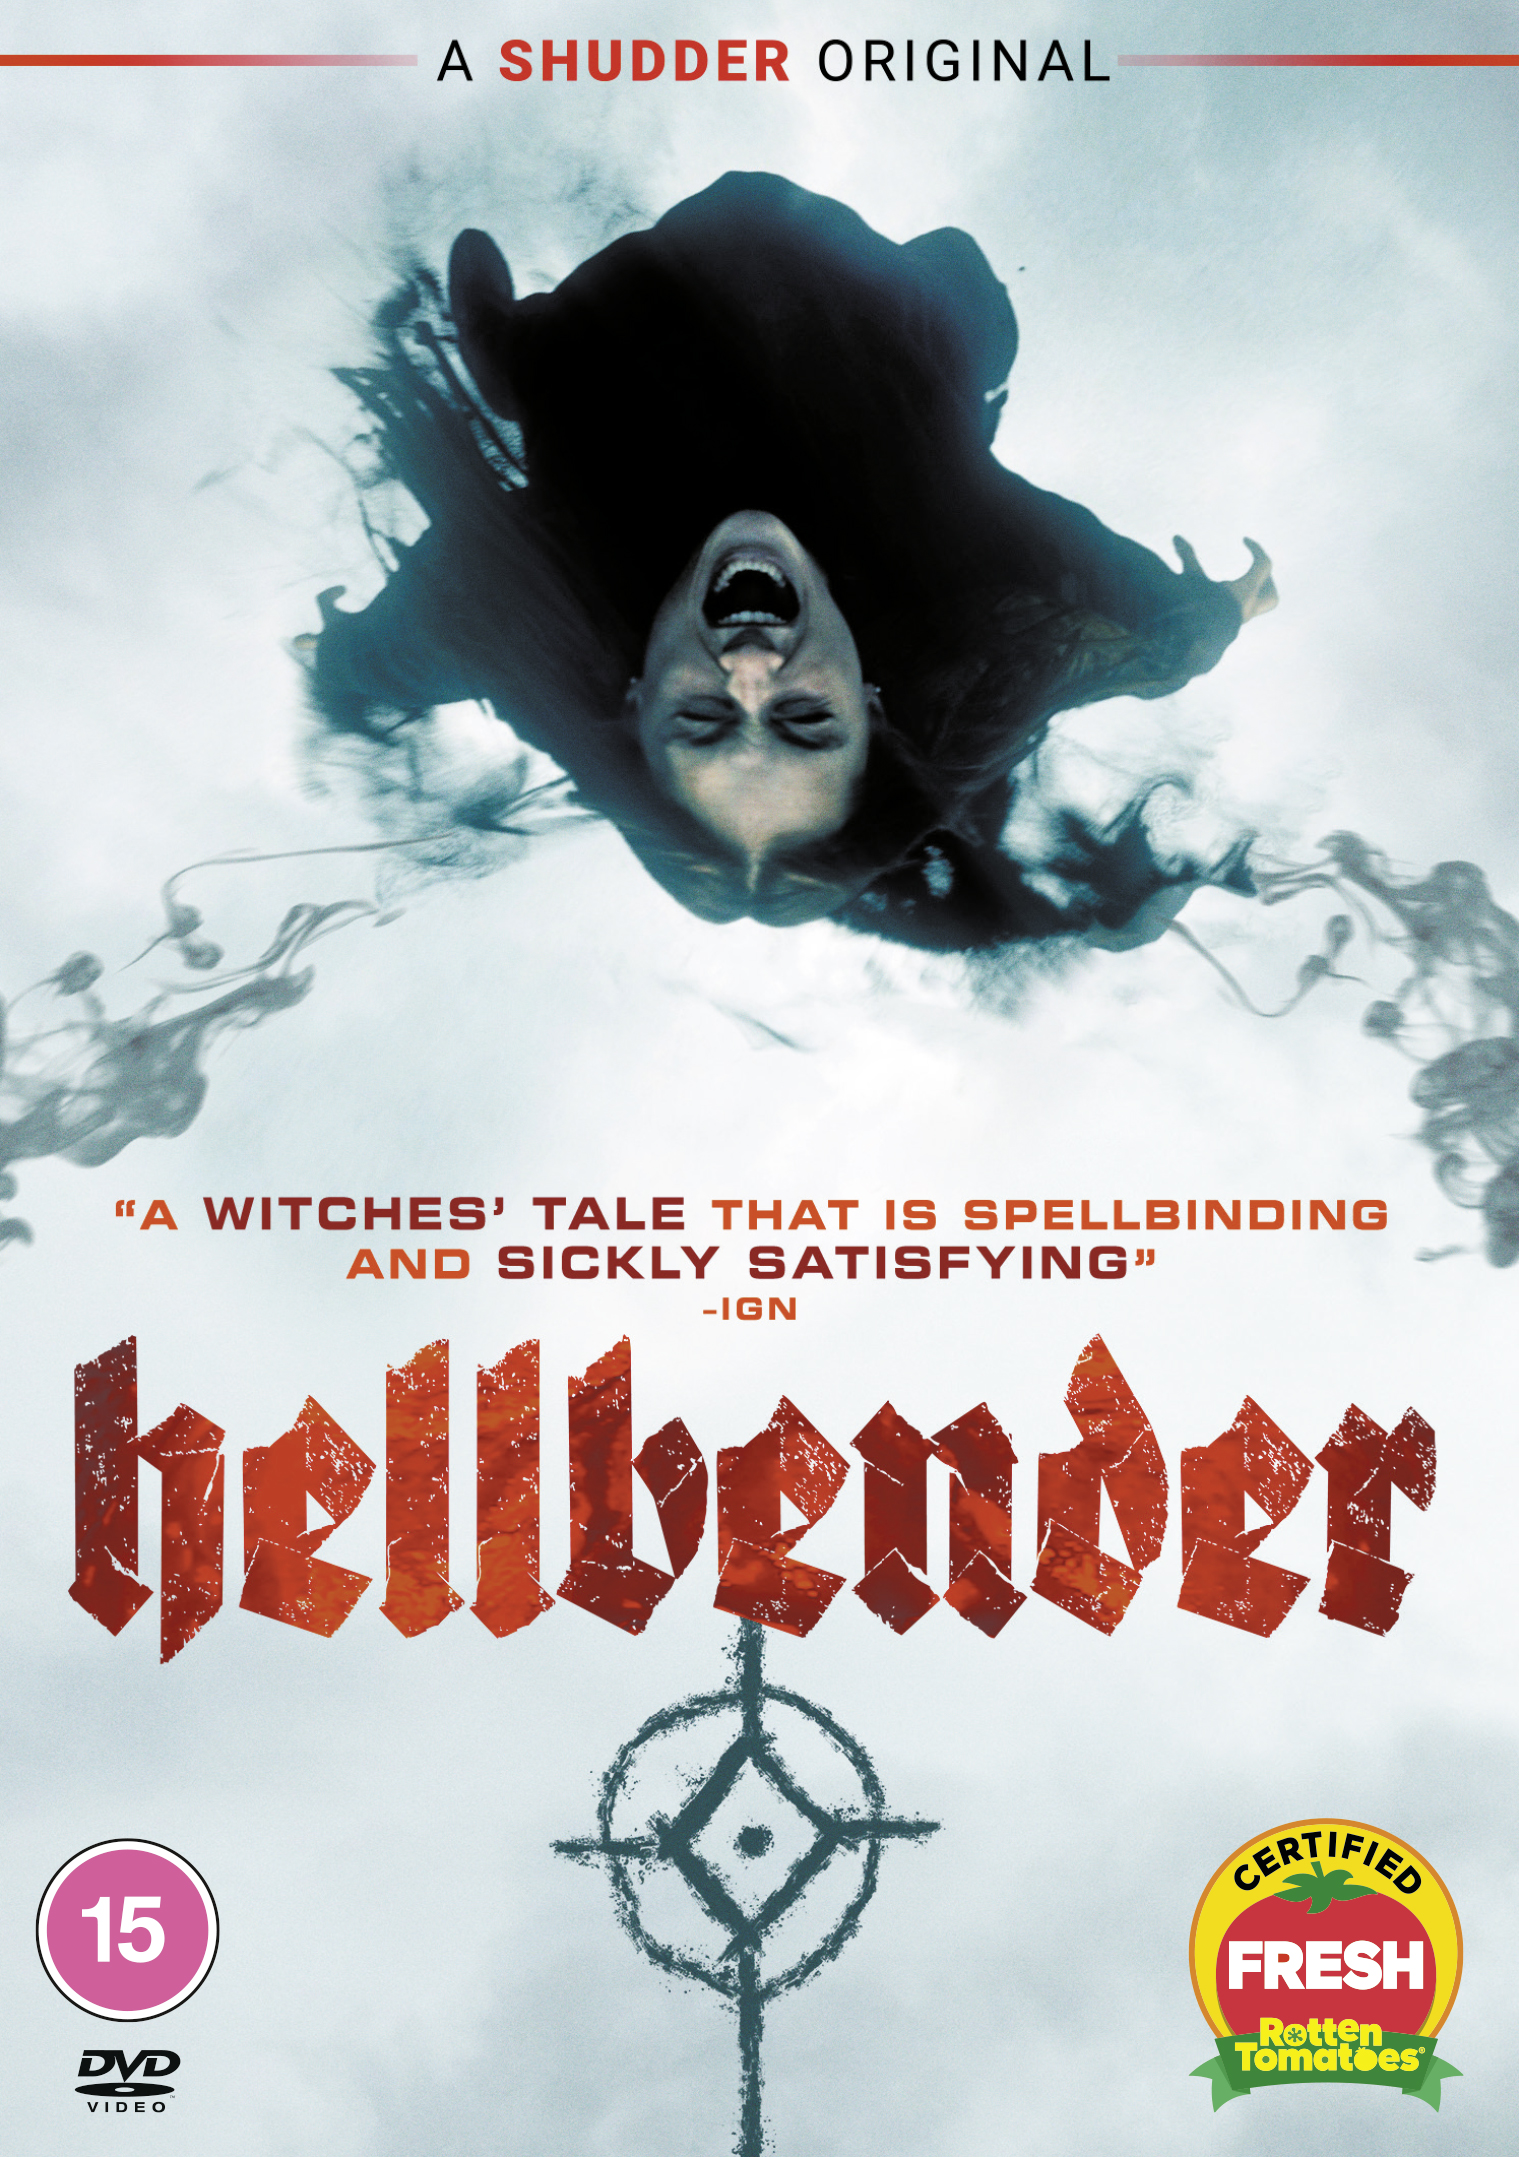 Gagnez l'original de Shudder "Hellbender" en DVD 4